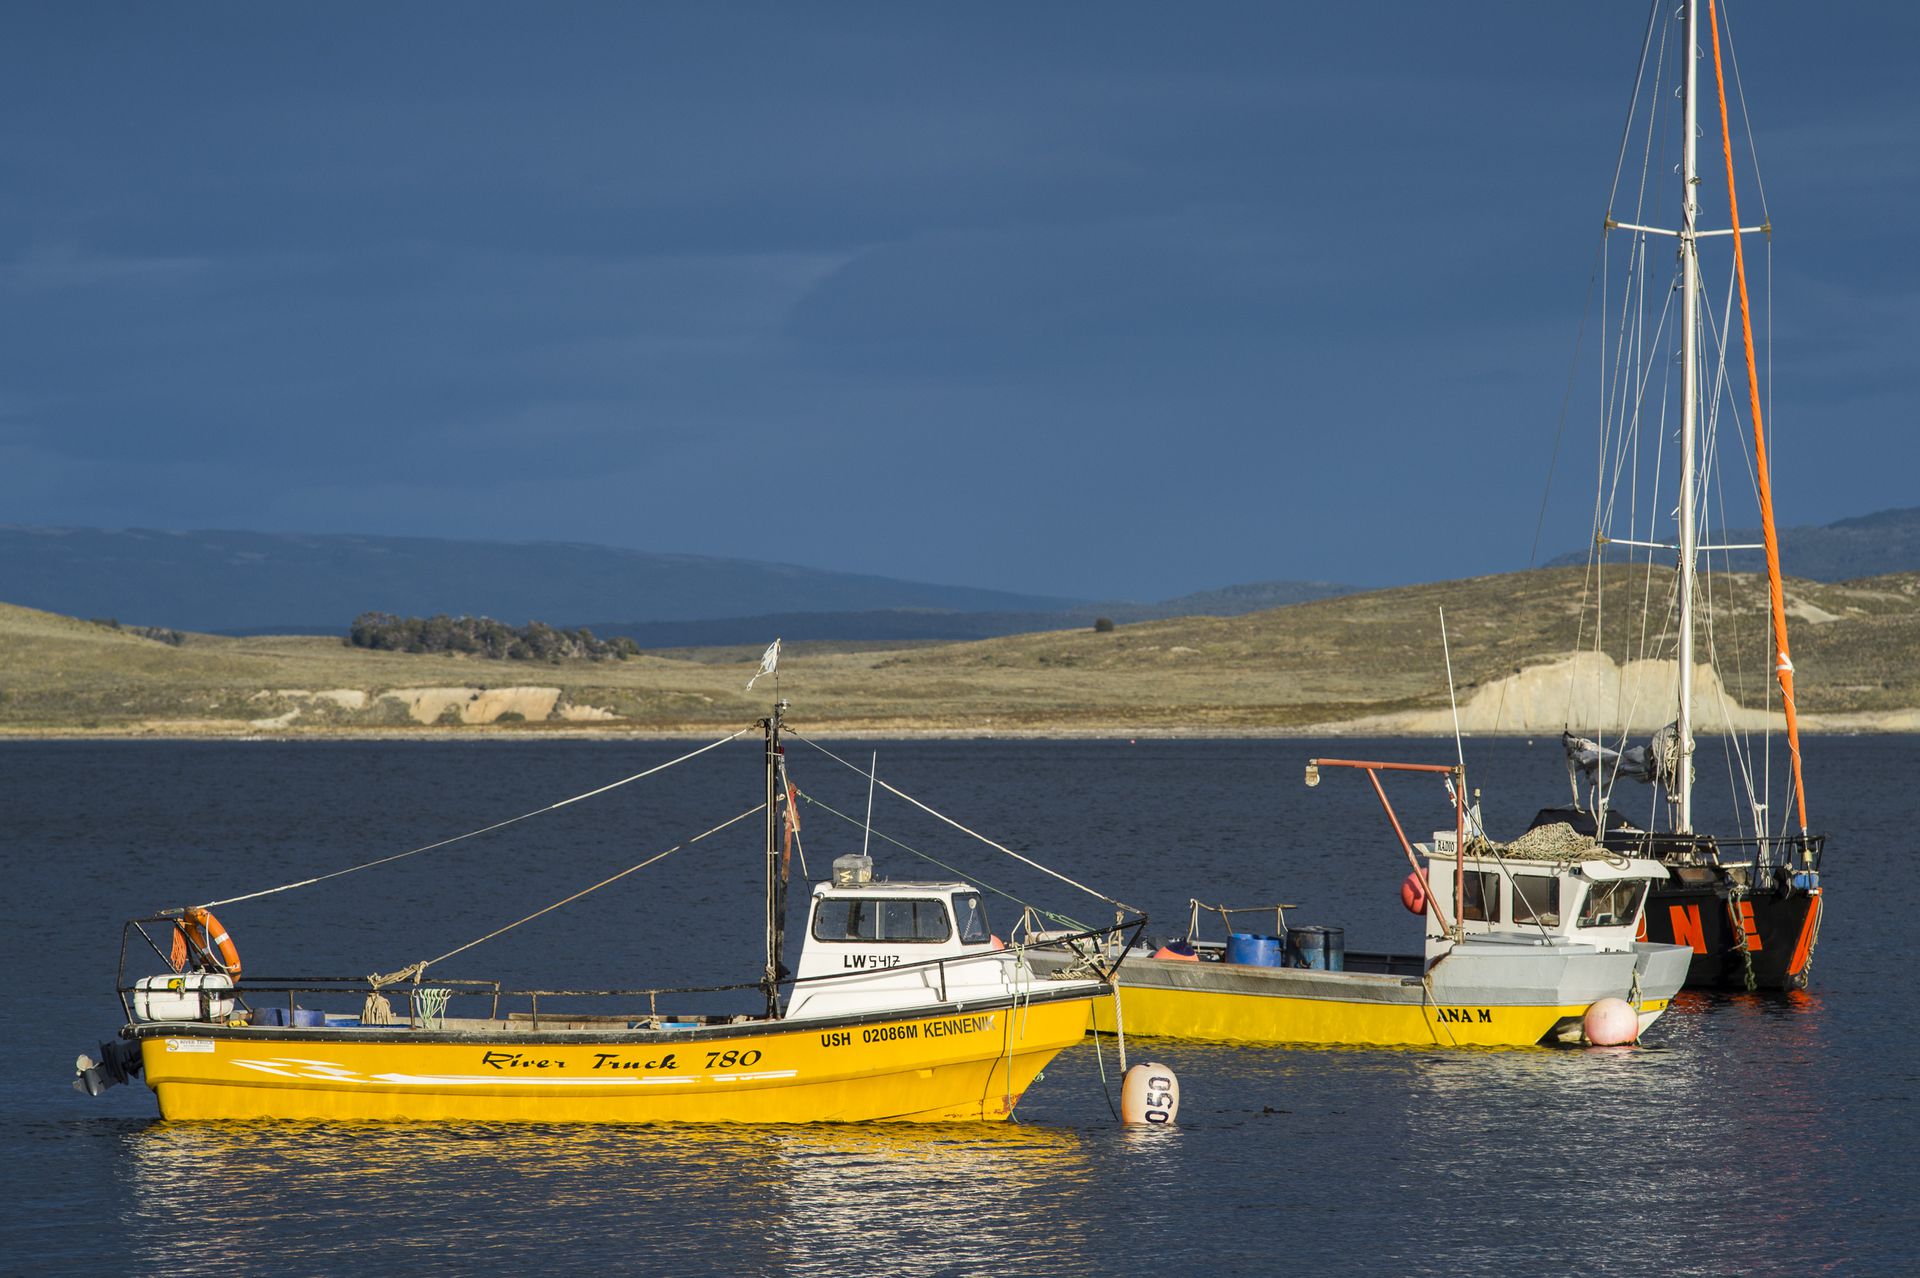 Uno de los tantos barcos amarillos que custodian la costa de Puerto Almanza y son marca registrada del lugar.